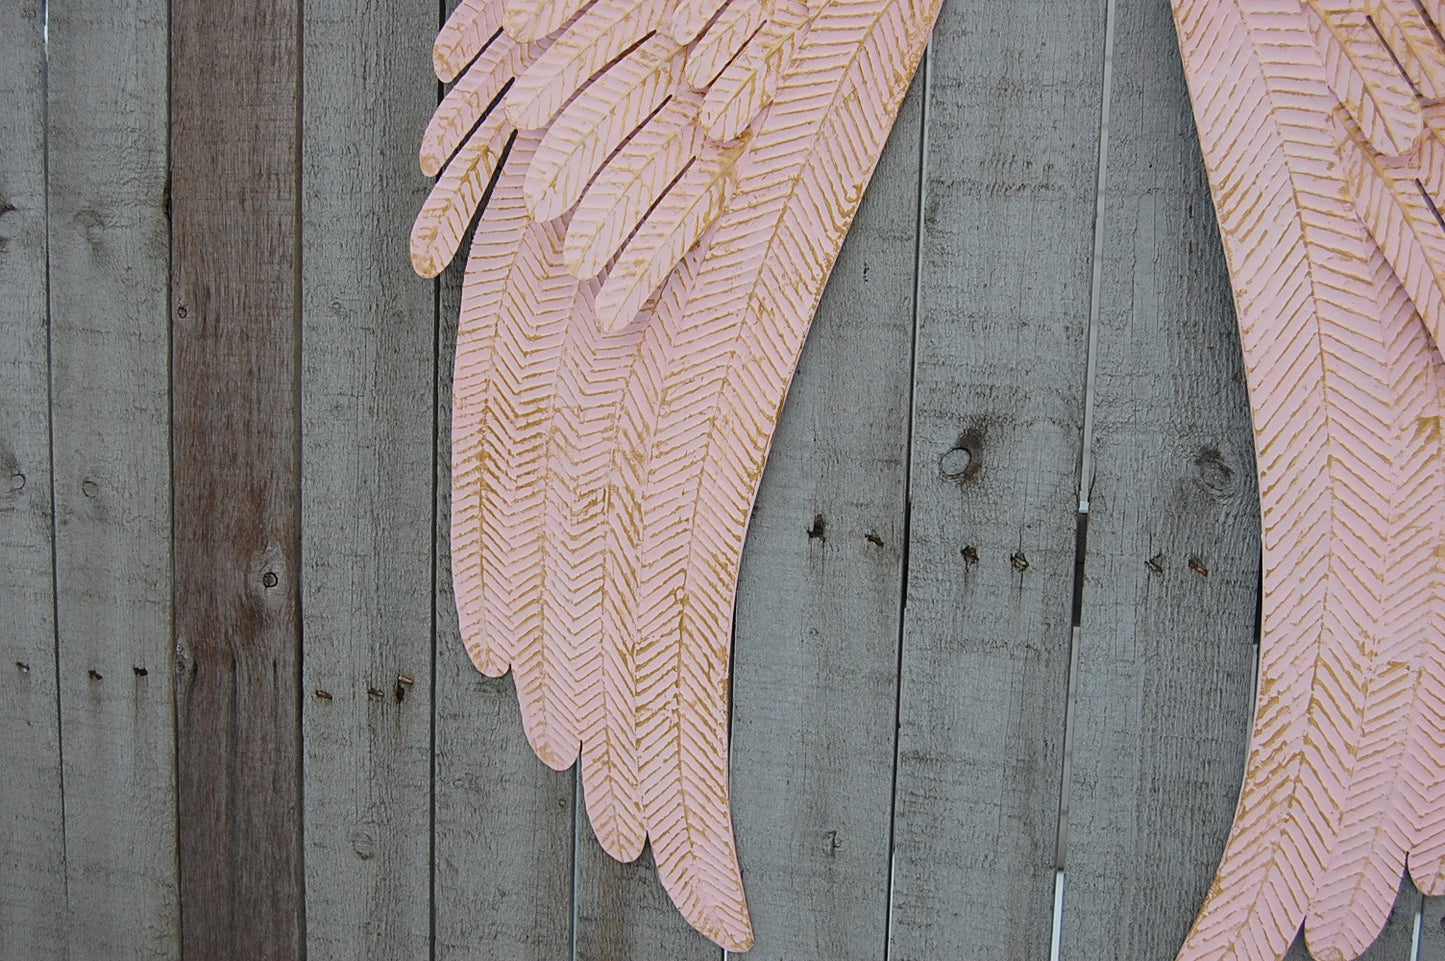 Rustic pink angel wings